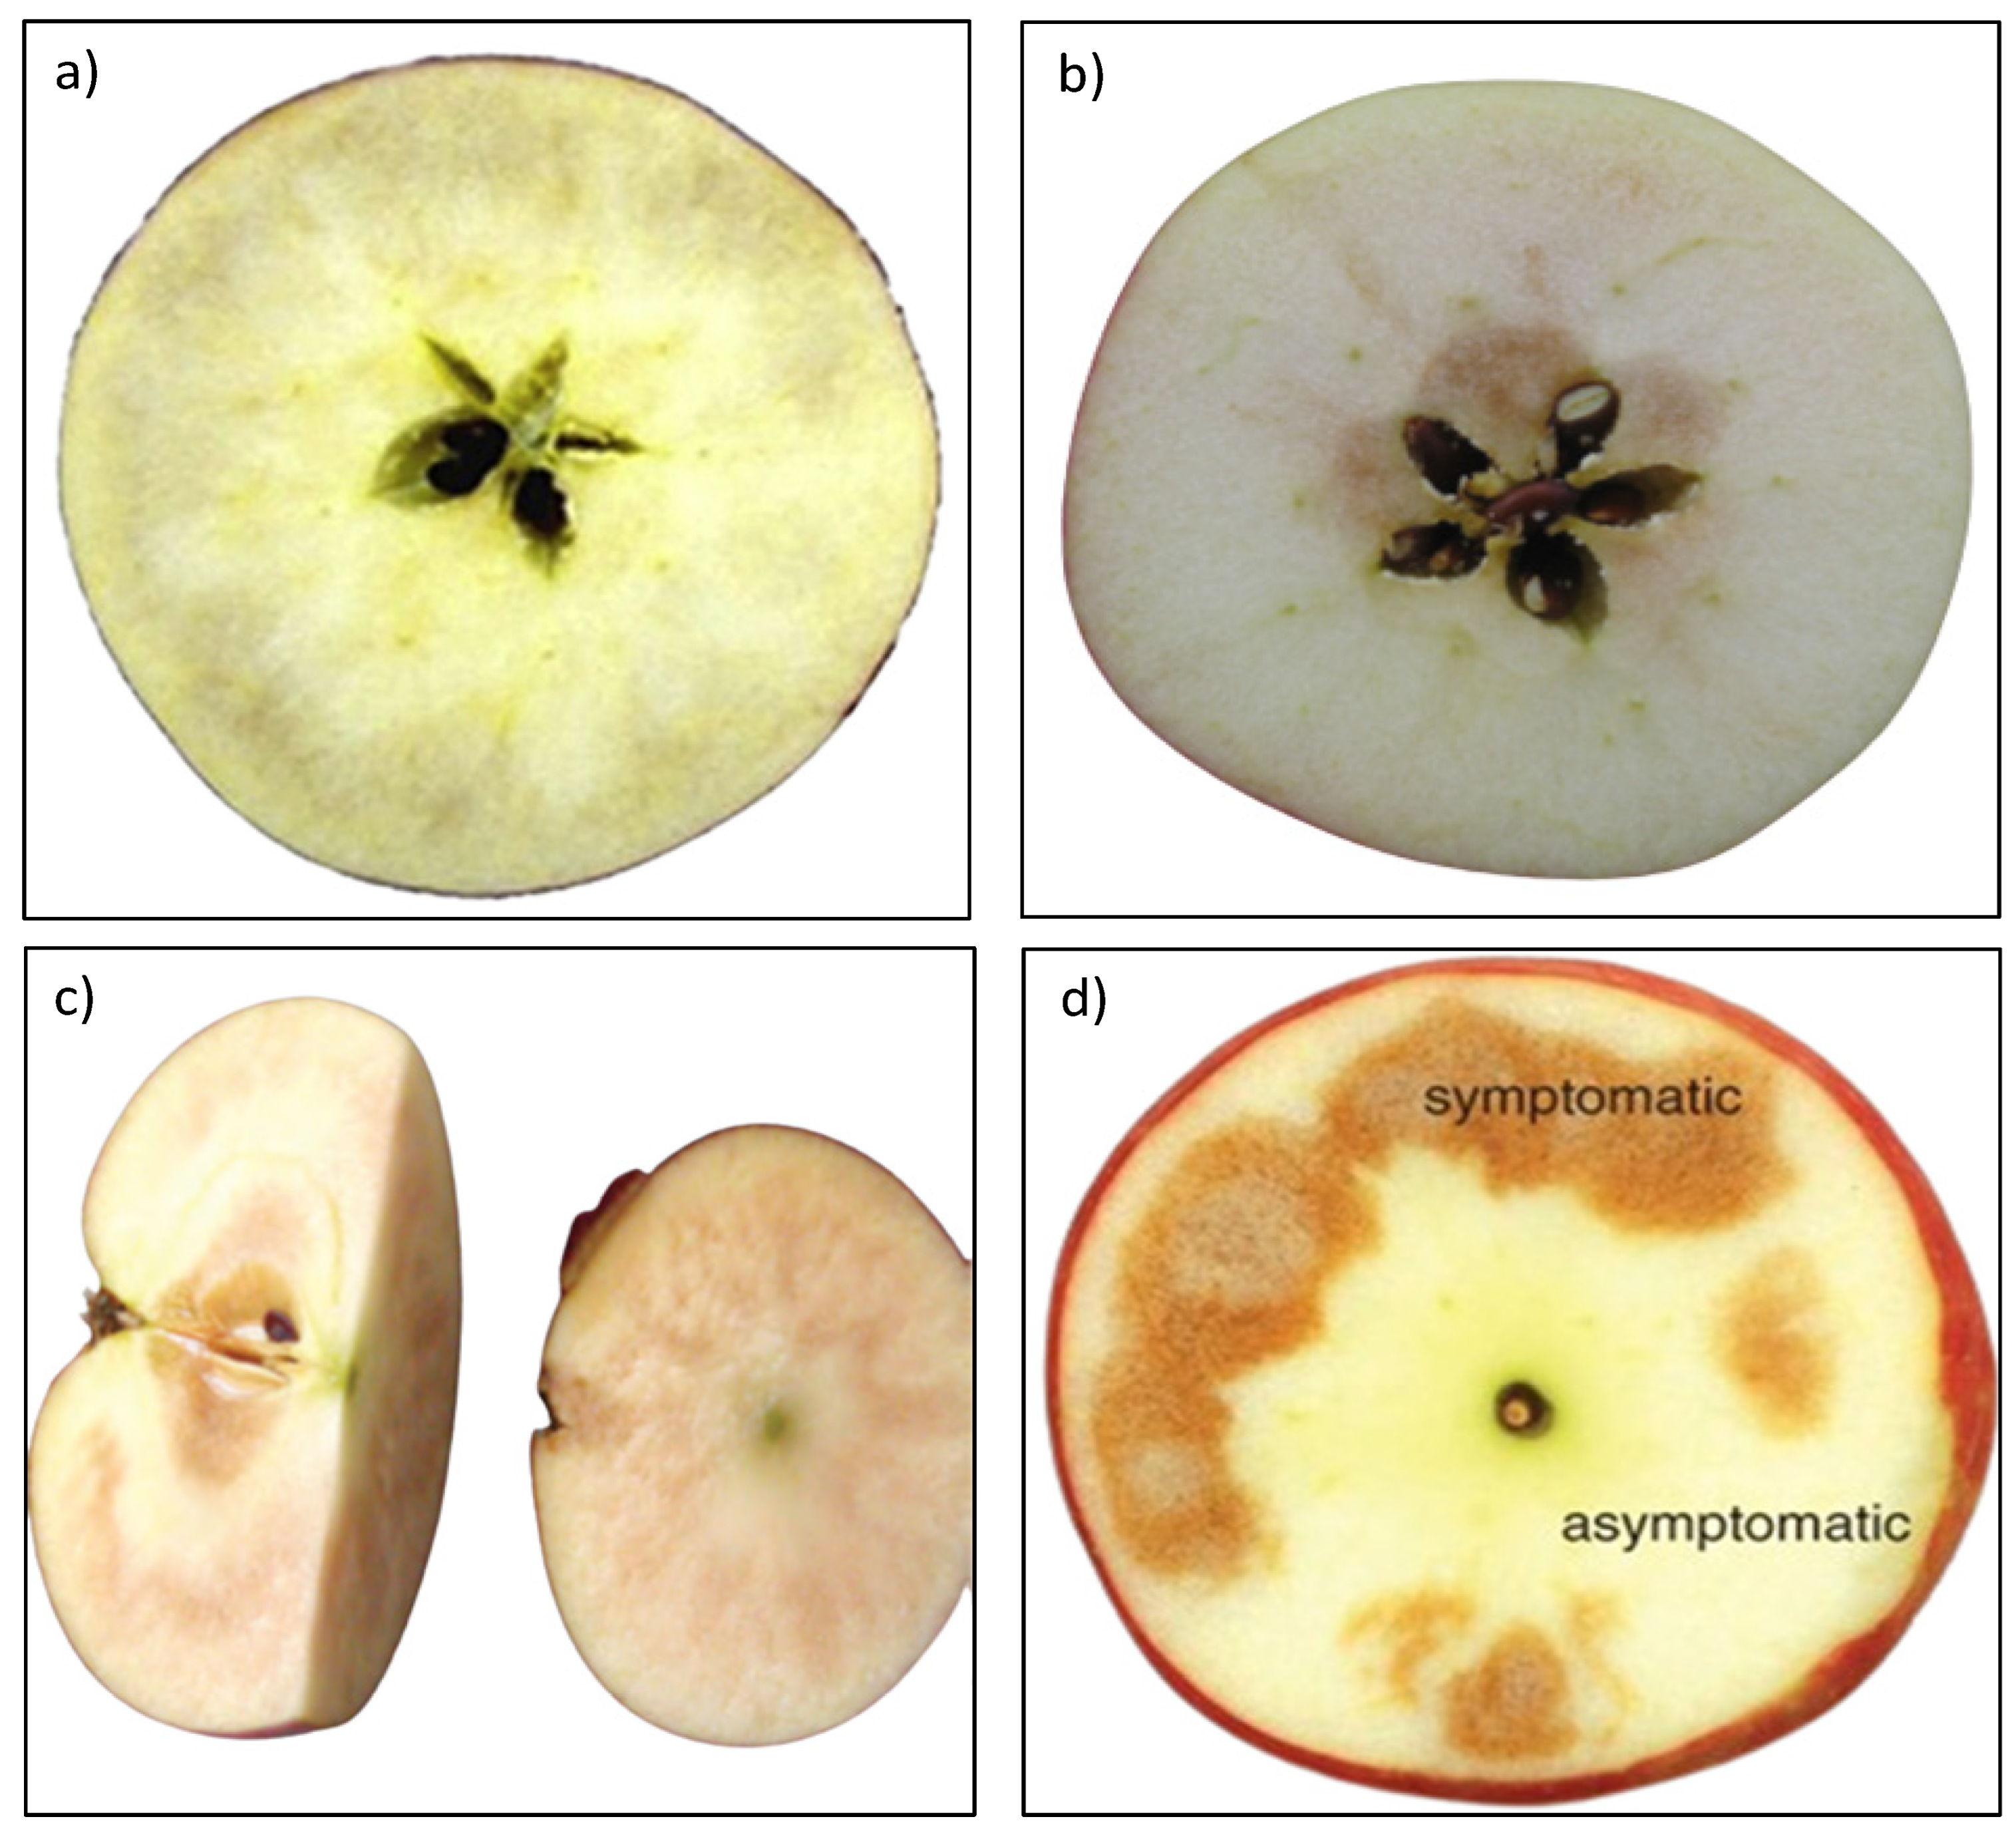 Apple - Honeycrisp - tasting notes, identification, reviews